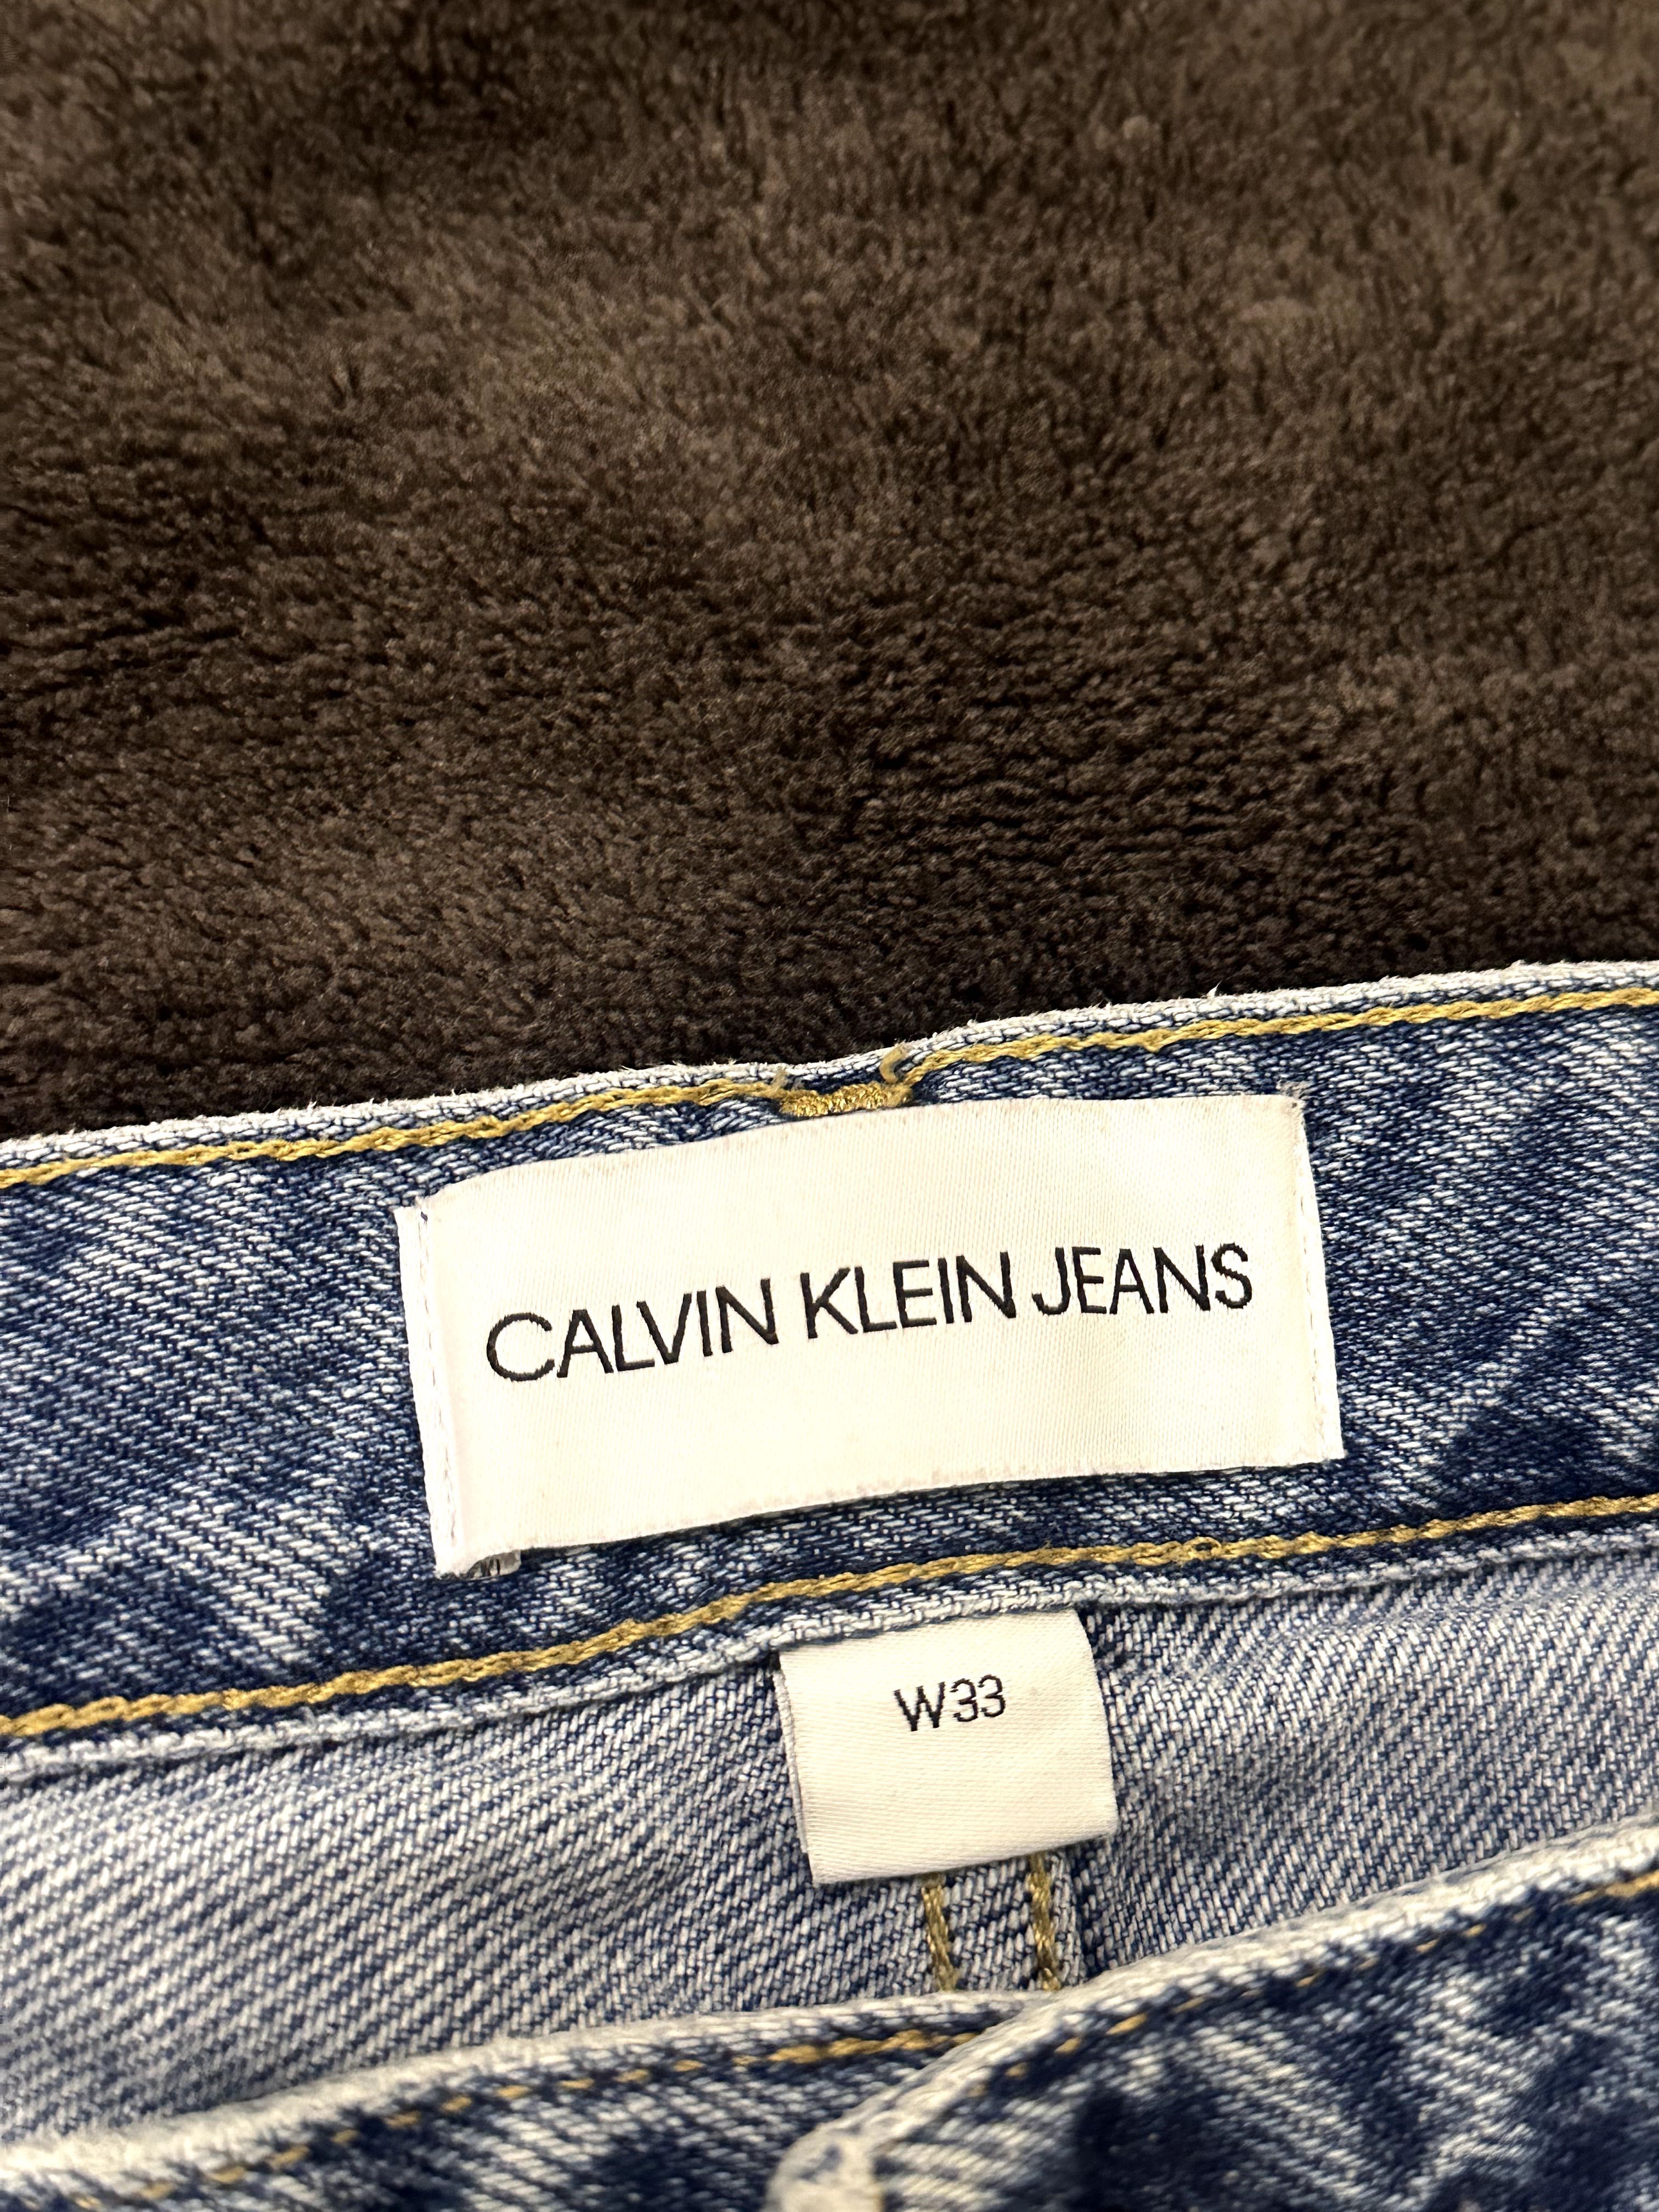 Джинсы Calvin Klein в хорошем состоянии